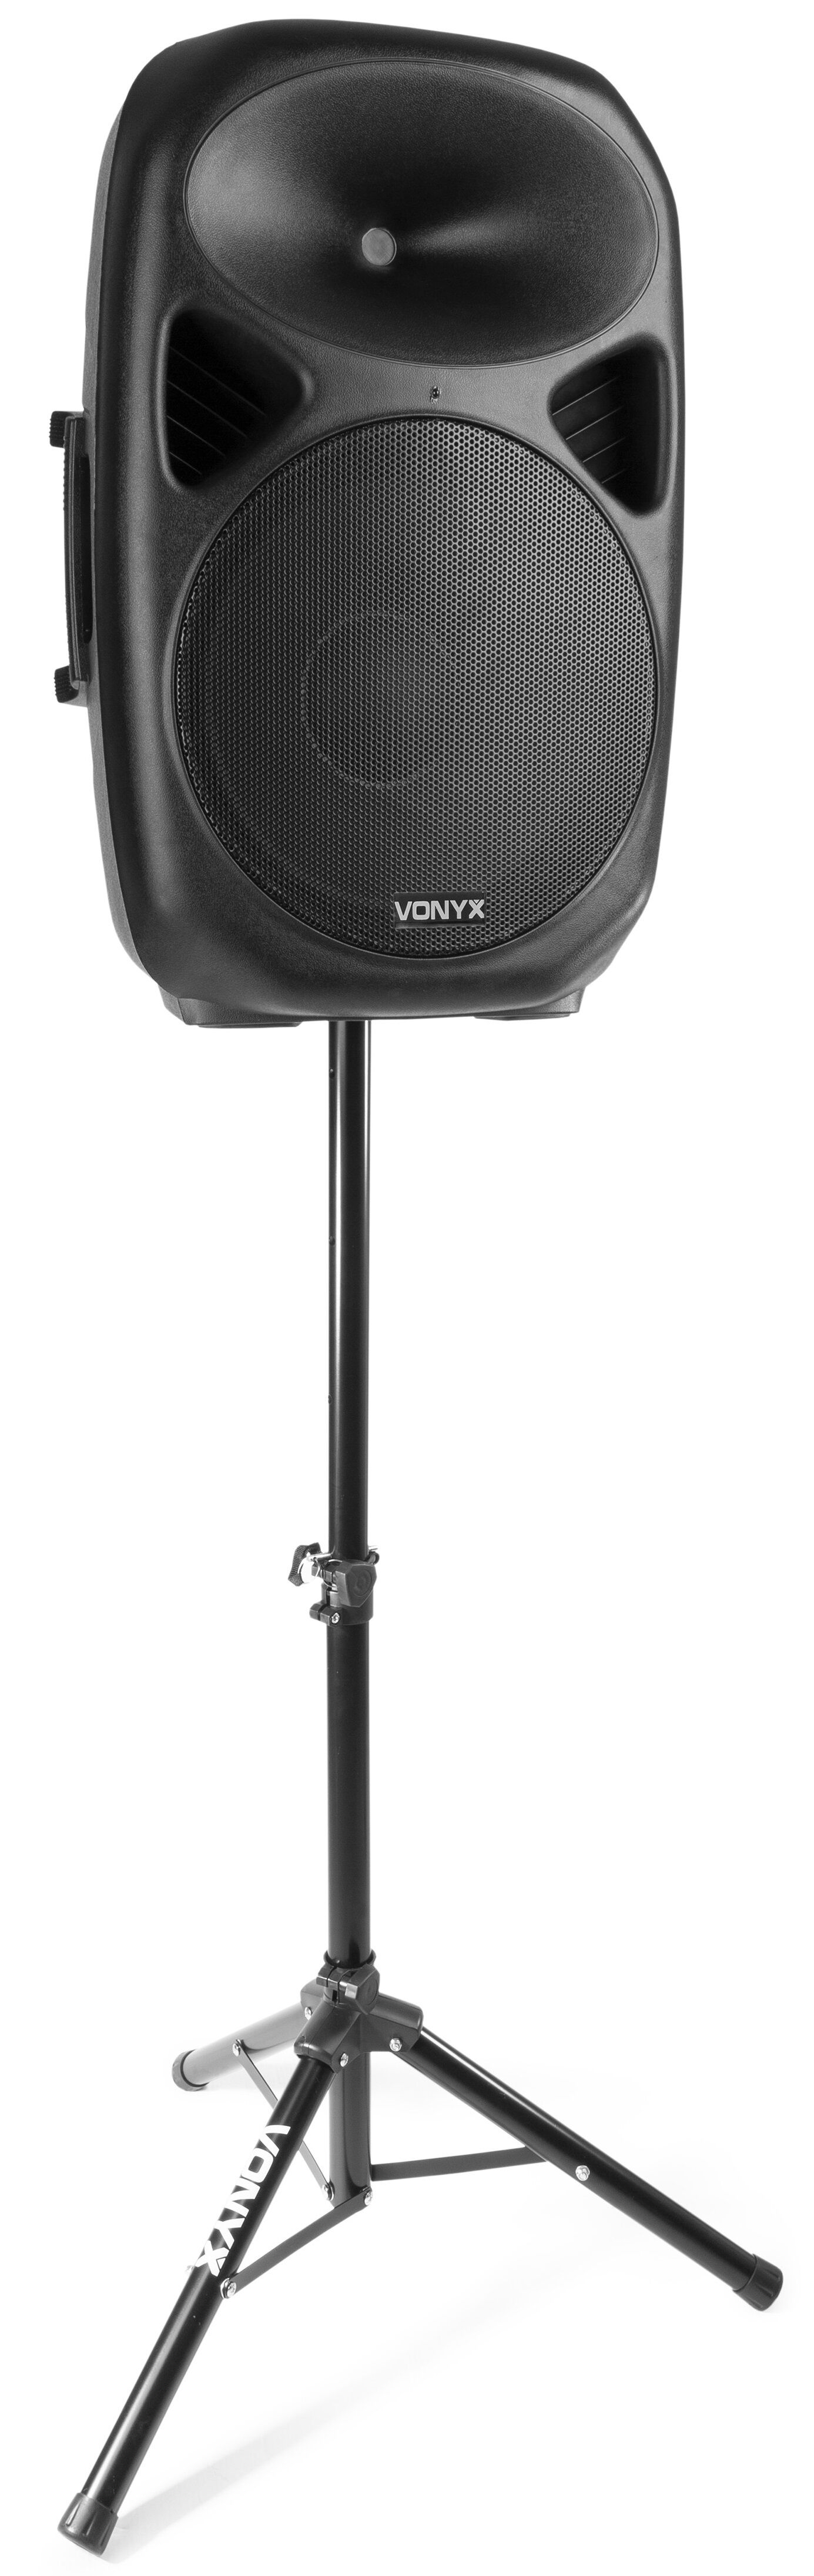 Vonyx Coluna Amplificada 15" 800w C/ Suporte Tripé (sps15a) - Vonyx